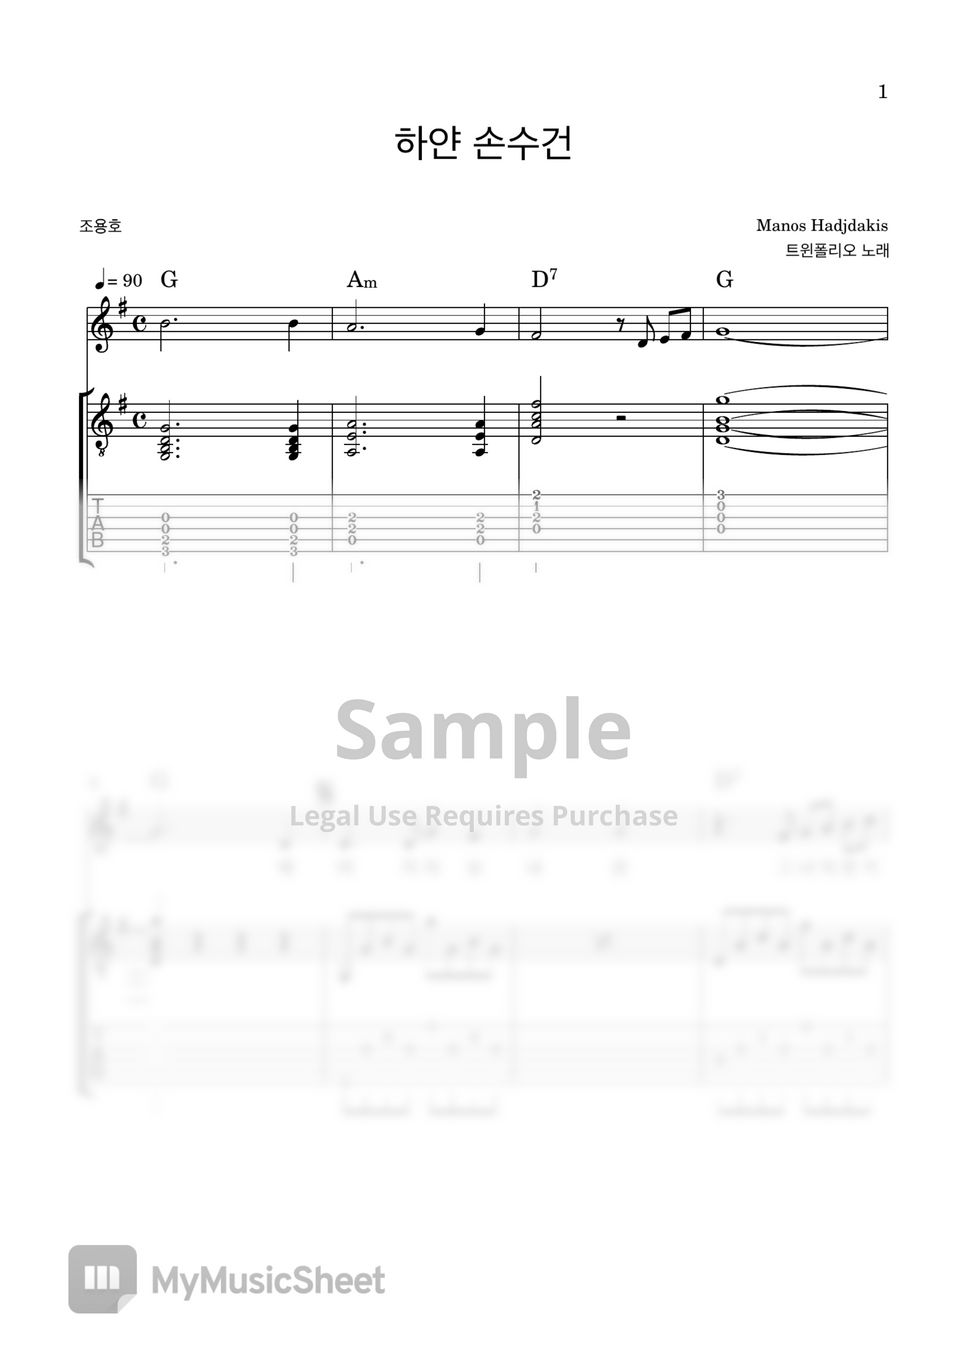 트윈폴리오 - 하얀 손수건 (통기타 반주 악보) by 레몬트리